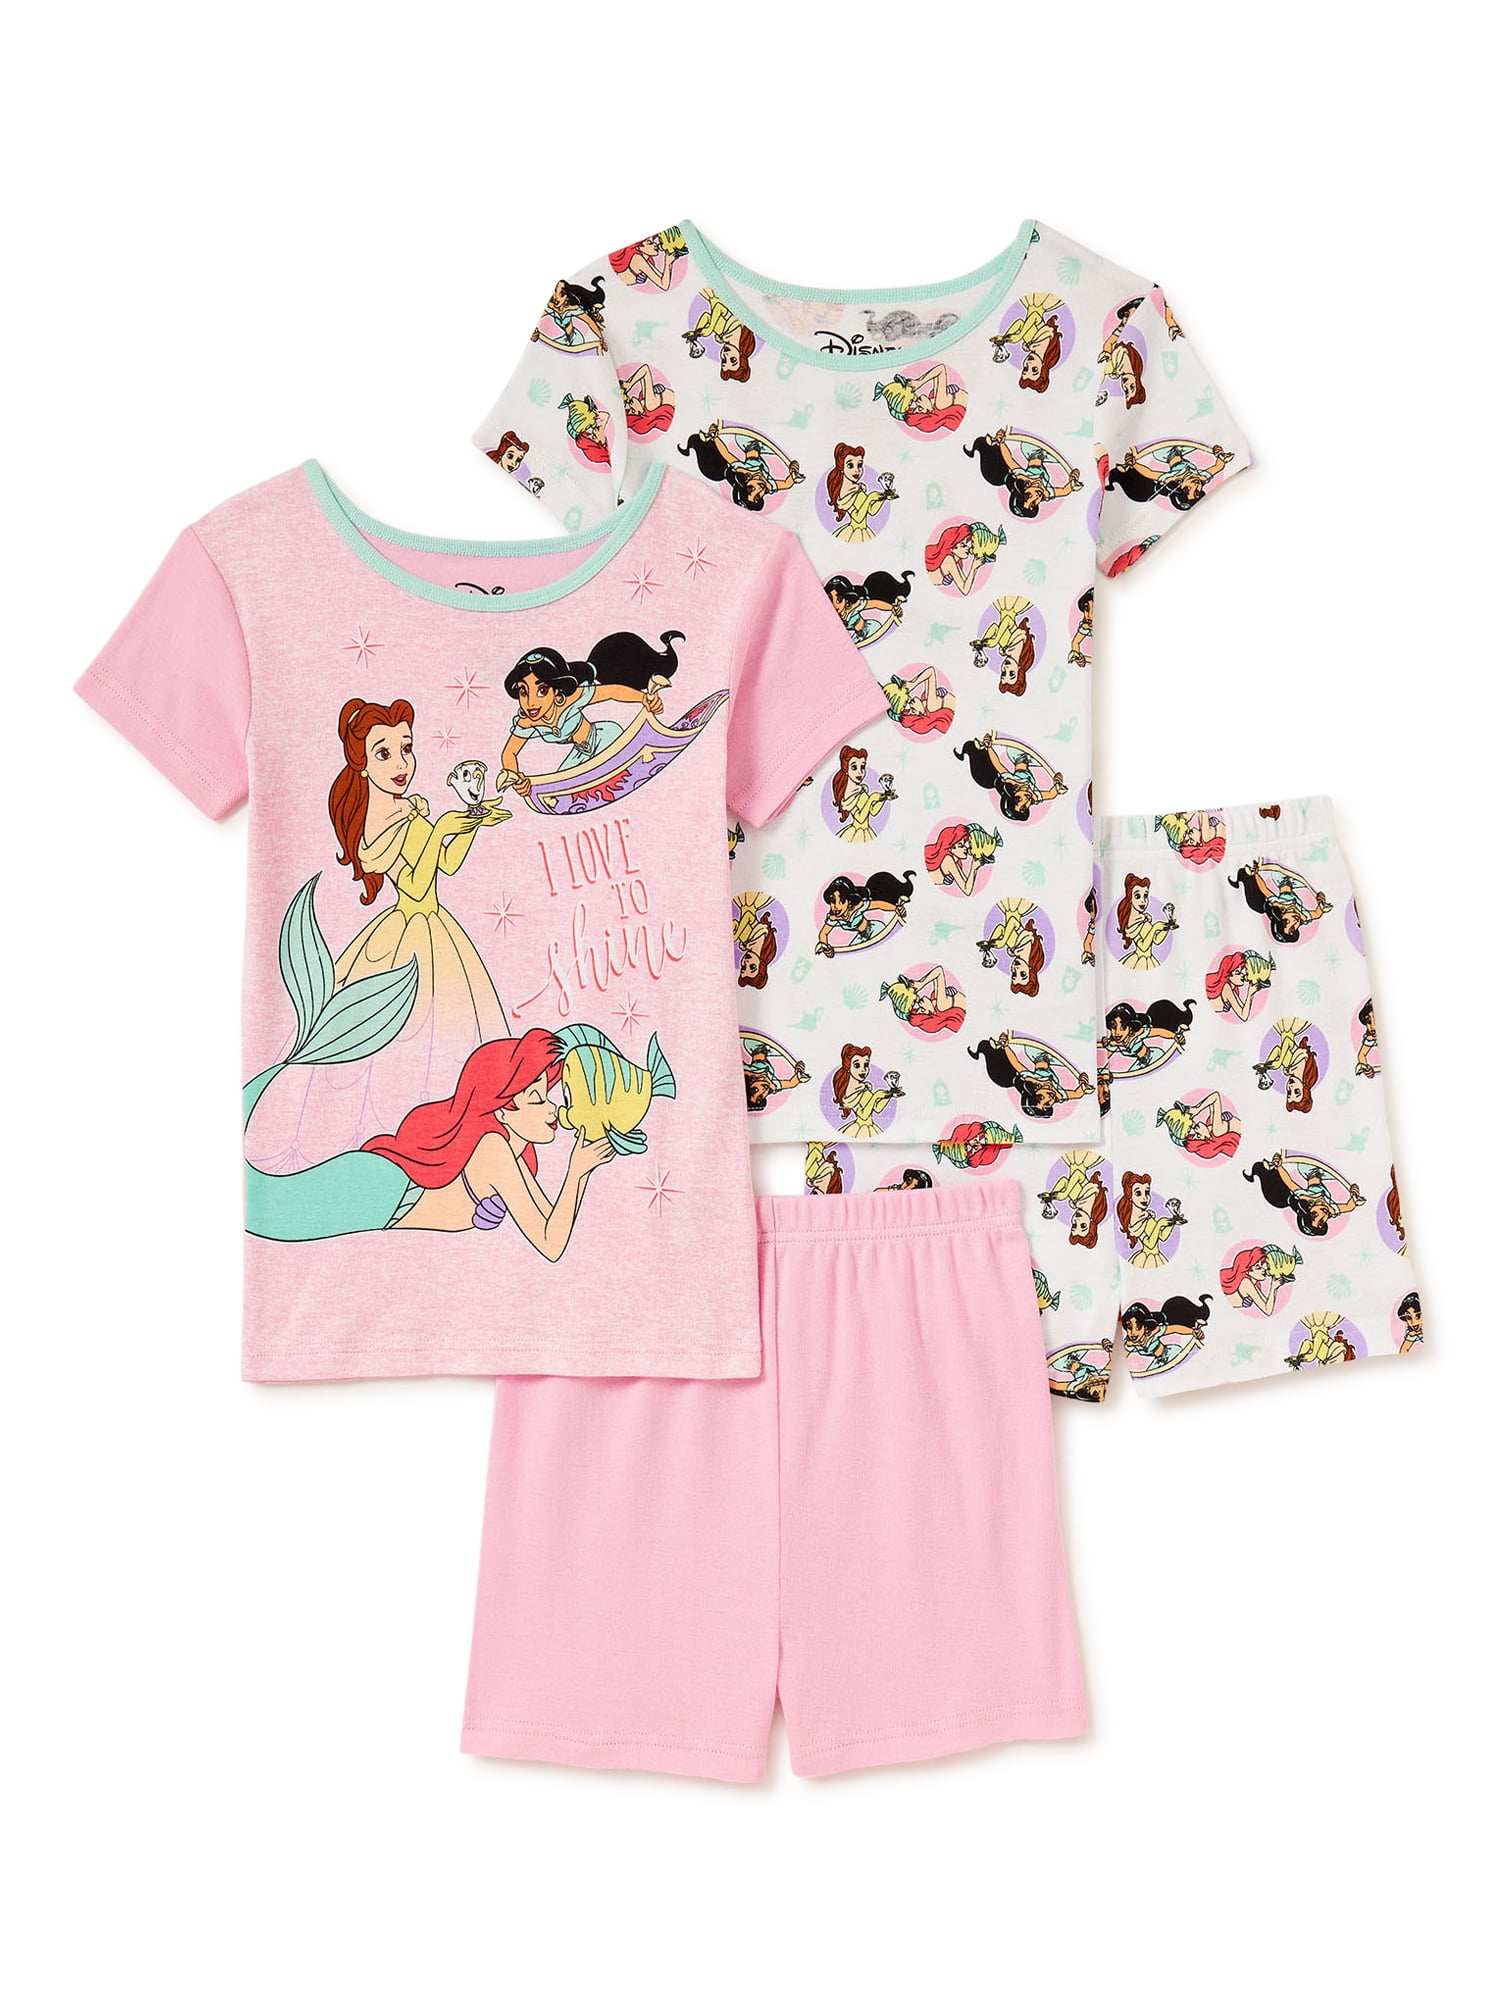 Official Disney Frozen Filles à Manches Longues Top Kids Princess Soft T-shirt en coton 